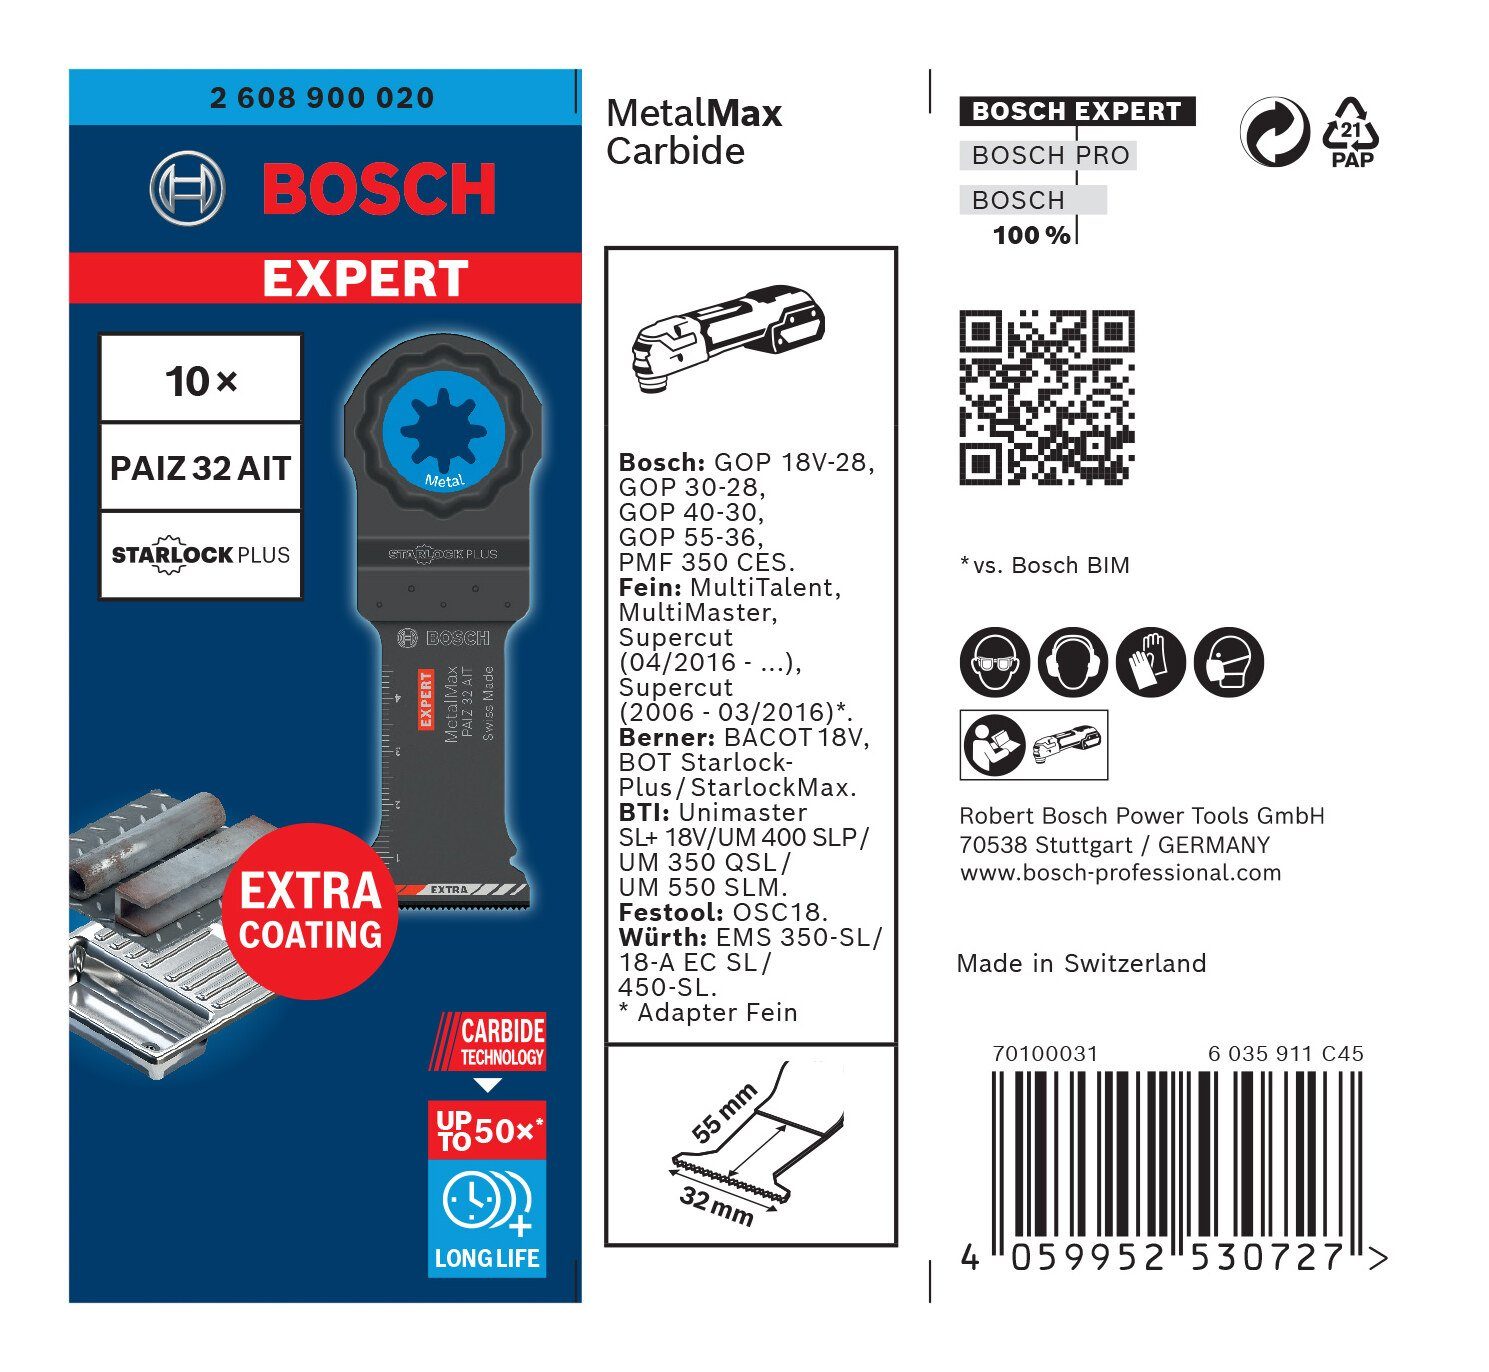 32 PAIZ x 32 - 10er-Pack Expert (10 Carbide 50 AT Stück), BOSCH Expert Tauchsägeblatt MetalMax MetalMax mm -